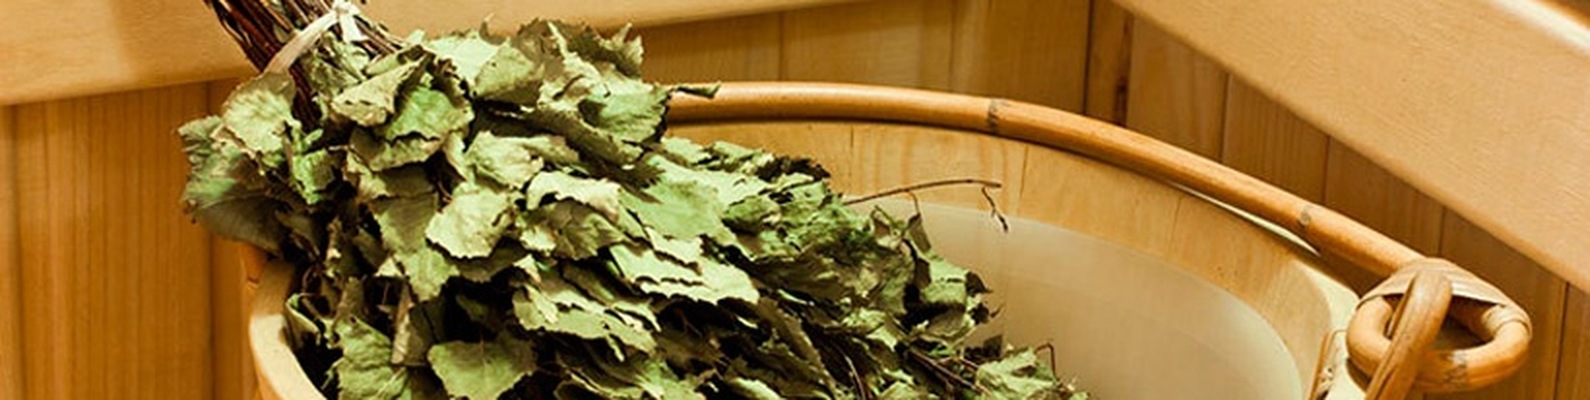 Березовые веники (15 фото): лучше ли они дубовых? польза и вред веников для бани. свойства листьев берез. как хранить веники?